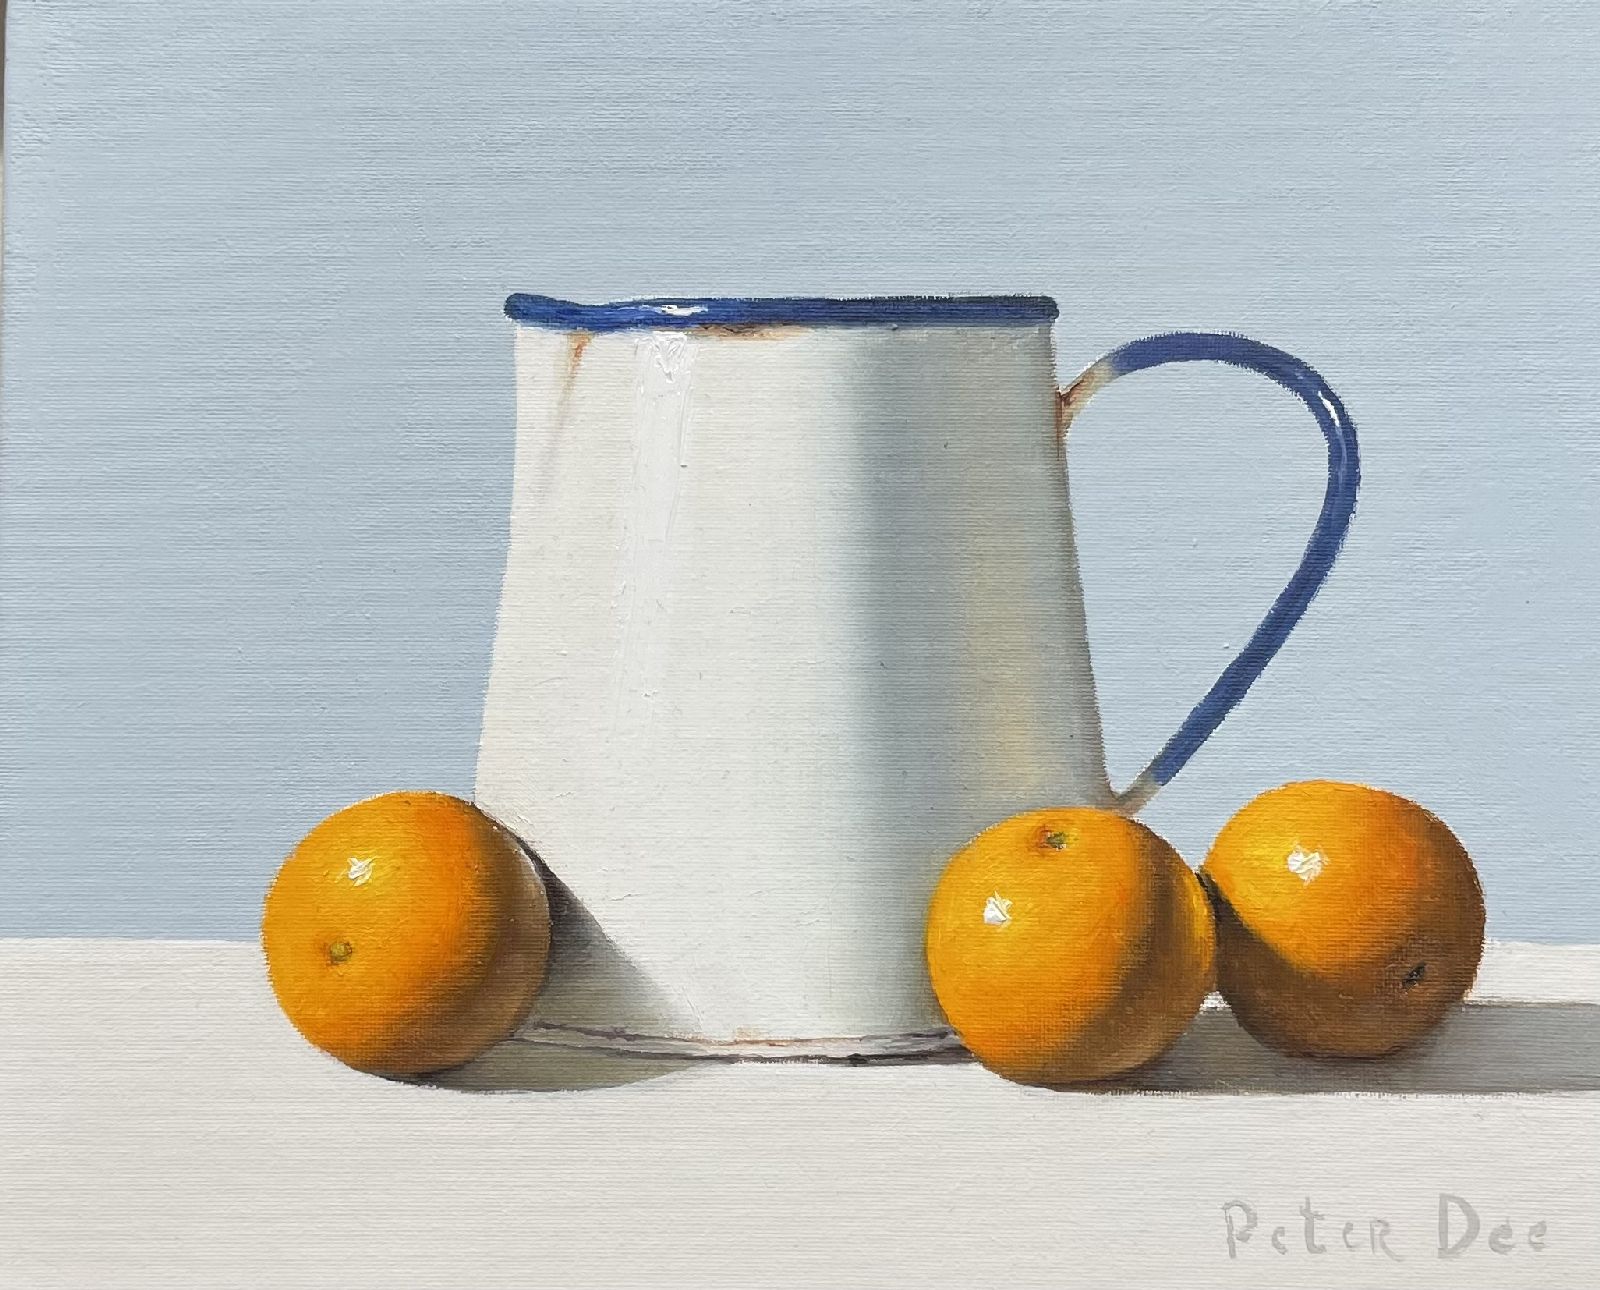 Peter Dee - Enamelware Jug with Oranges